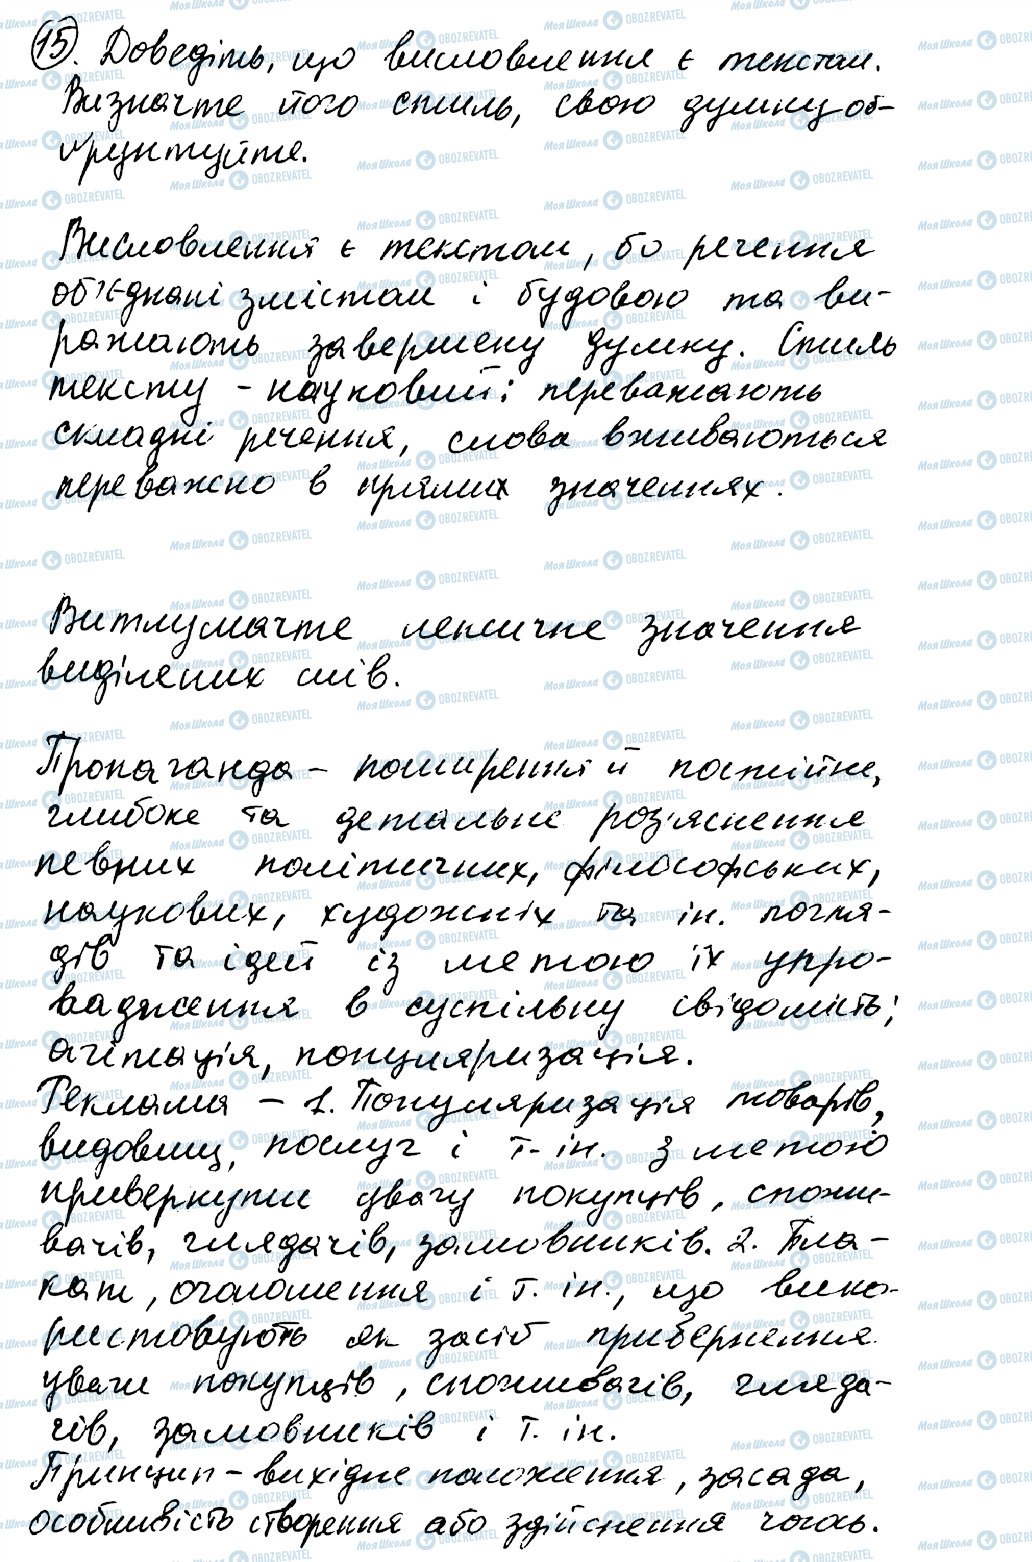 ГДЗ Українська мова 8 клас сторінка 15